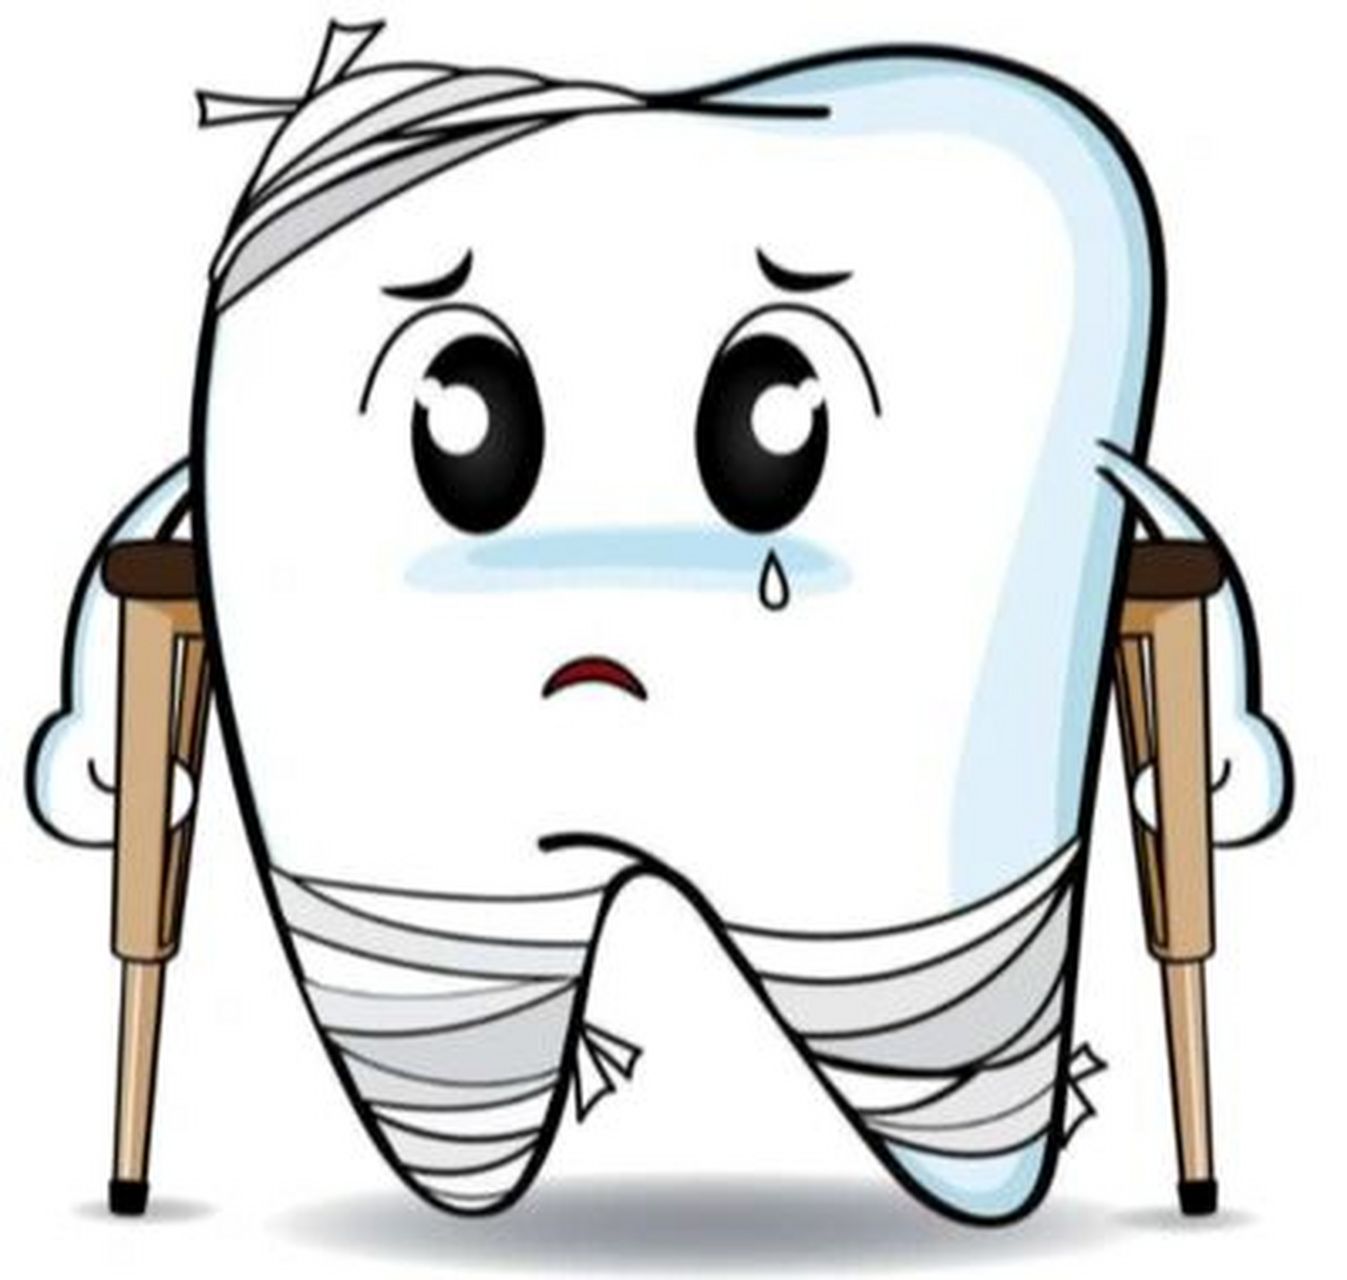 宁波口腔医院推荐 最近想去把蛀掉的智齿拔掉,想问一下有没有好的口腔